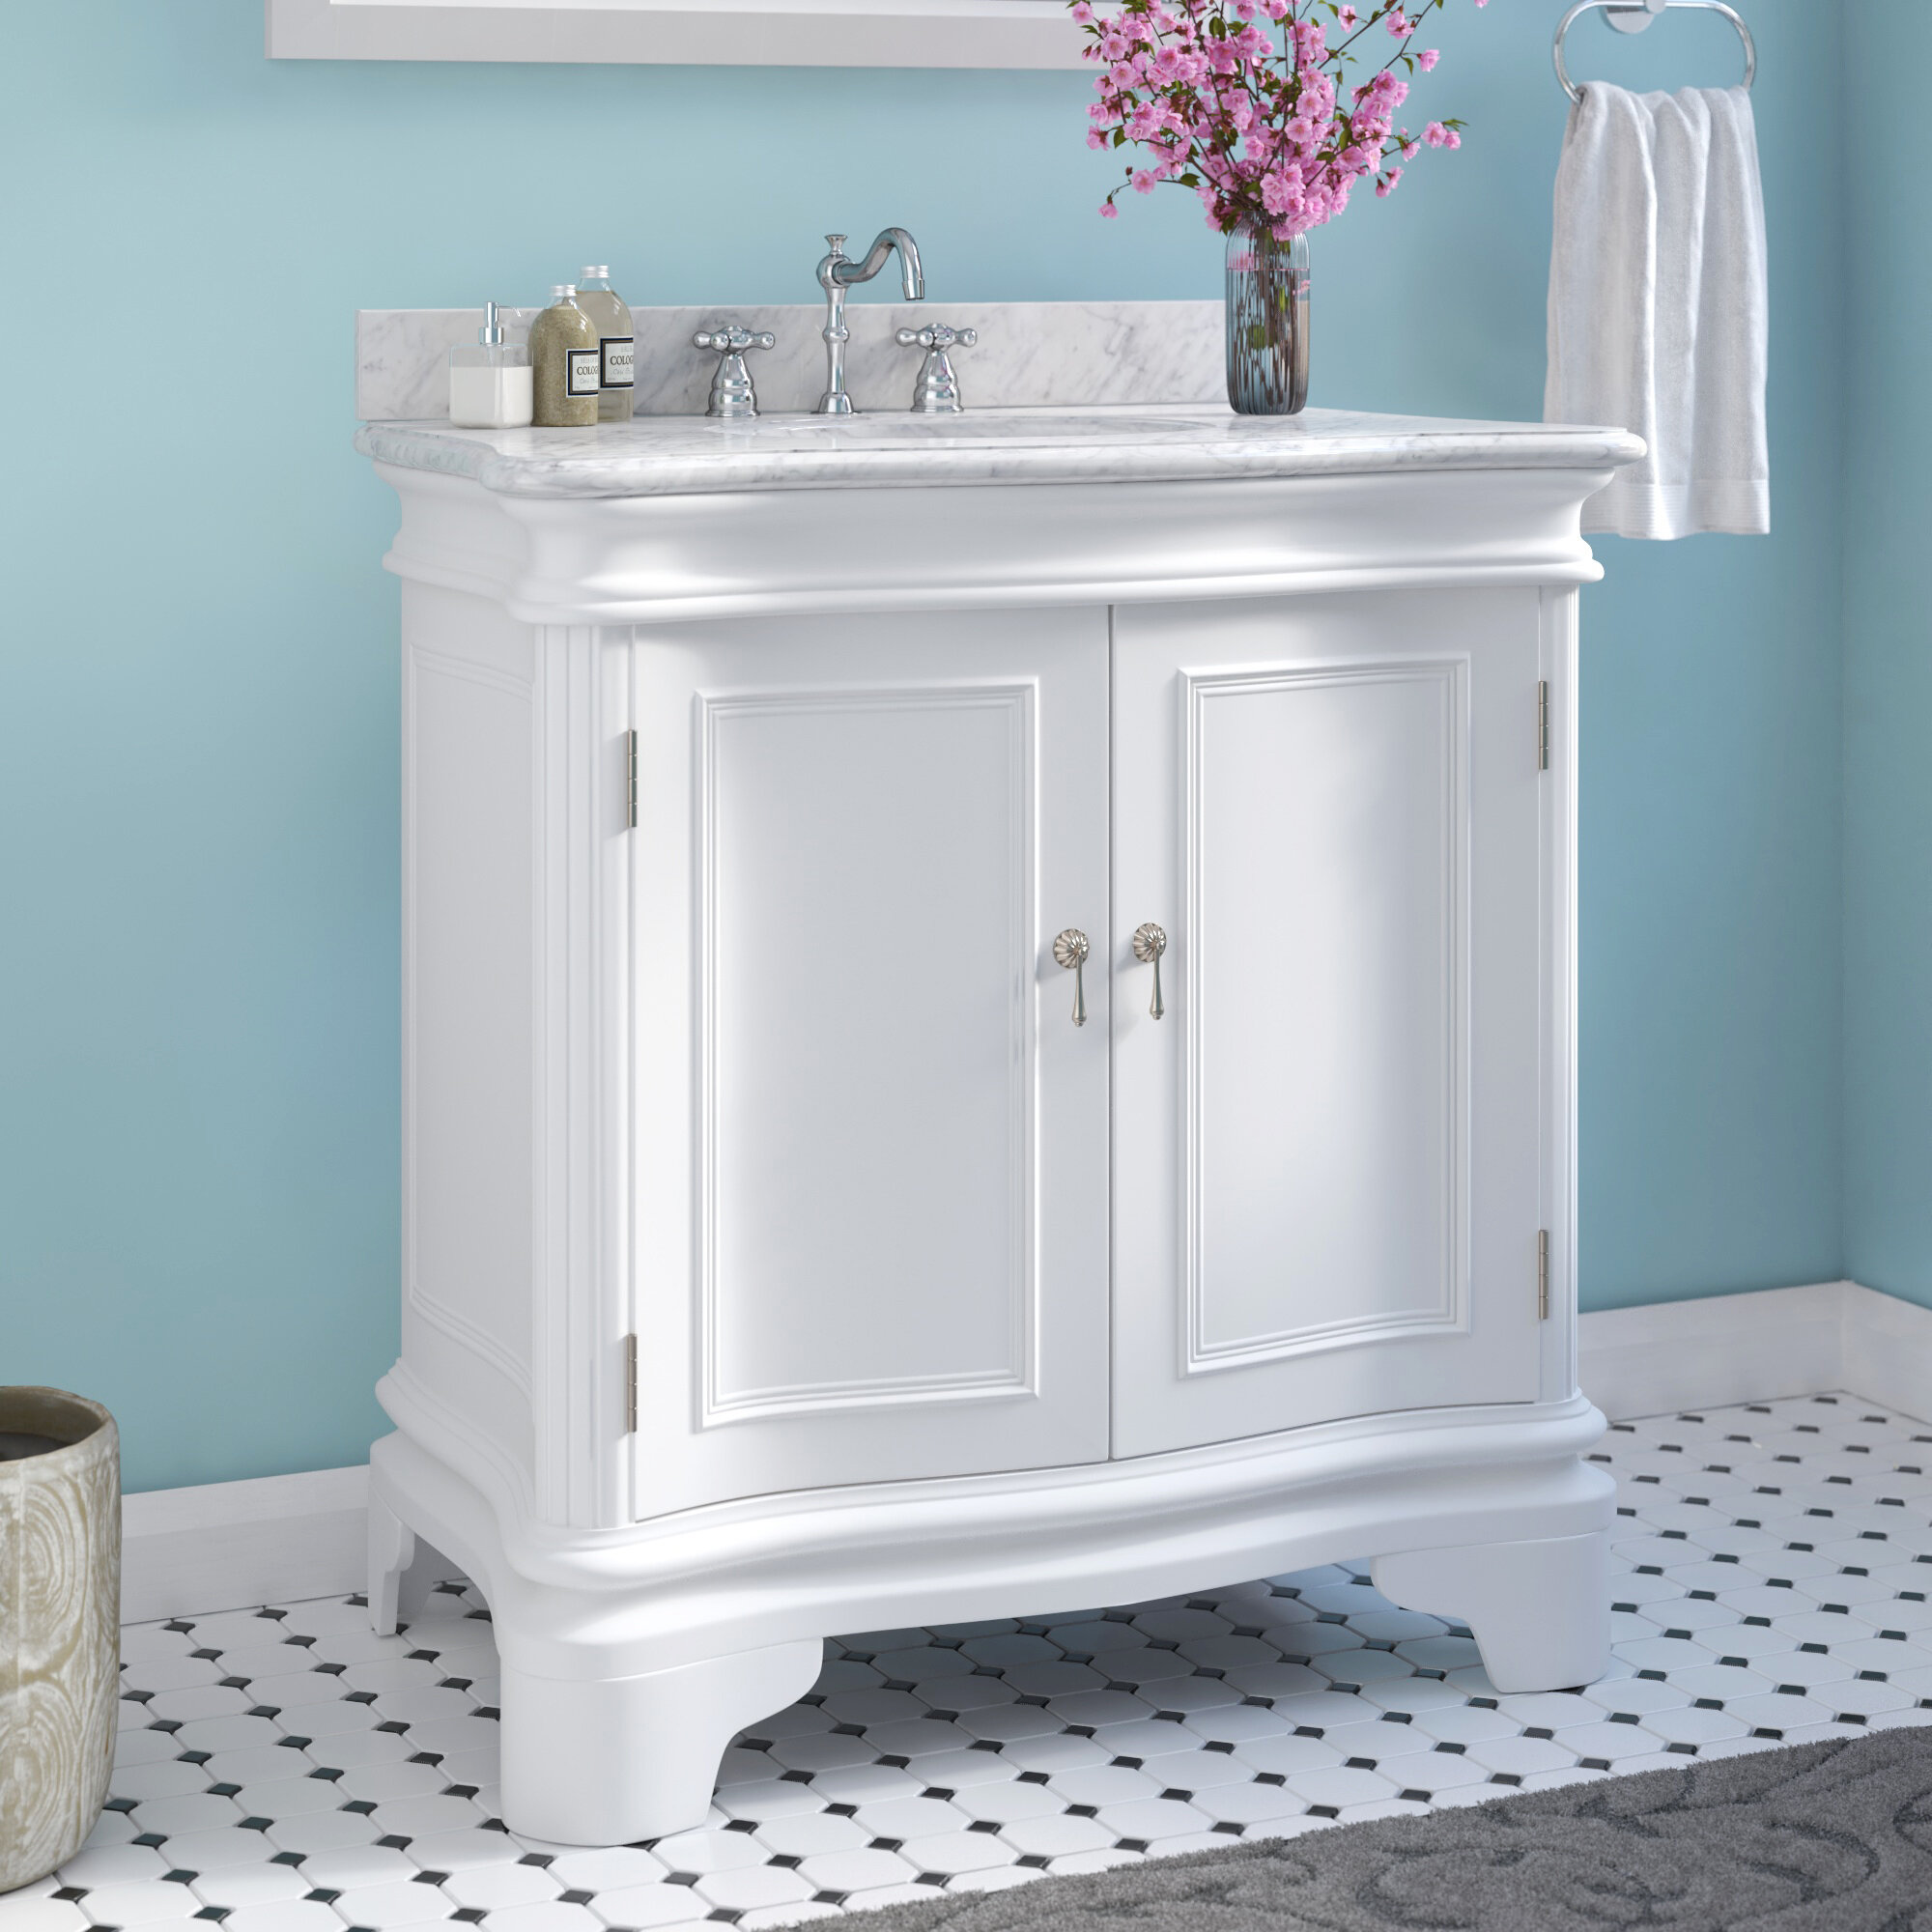 Charlton Home Toller 36 Single Bathroom Vanity Set Reviews Wayfair